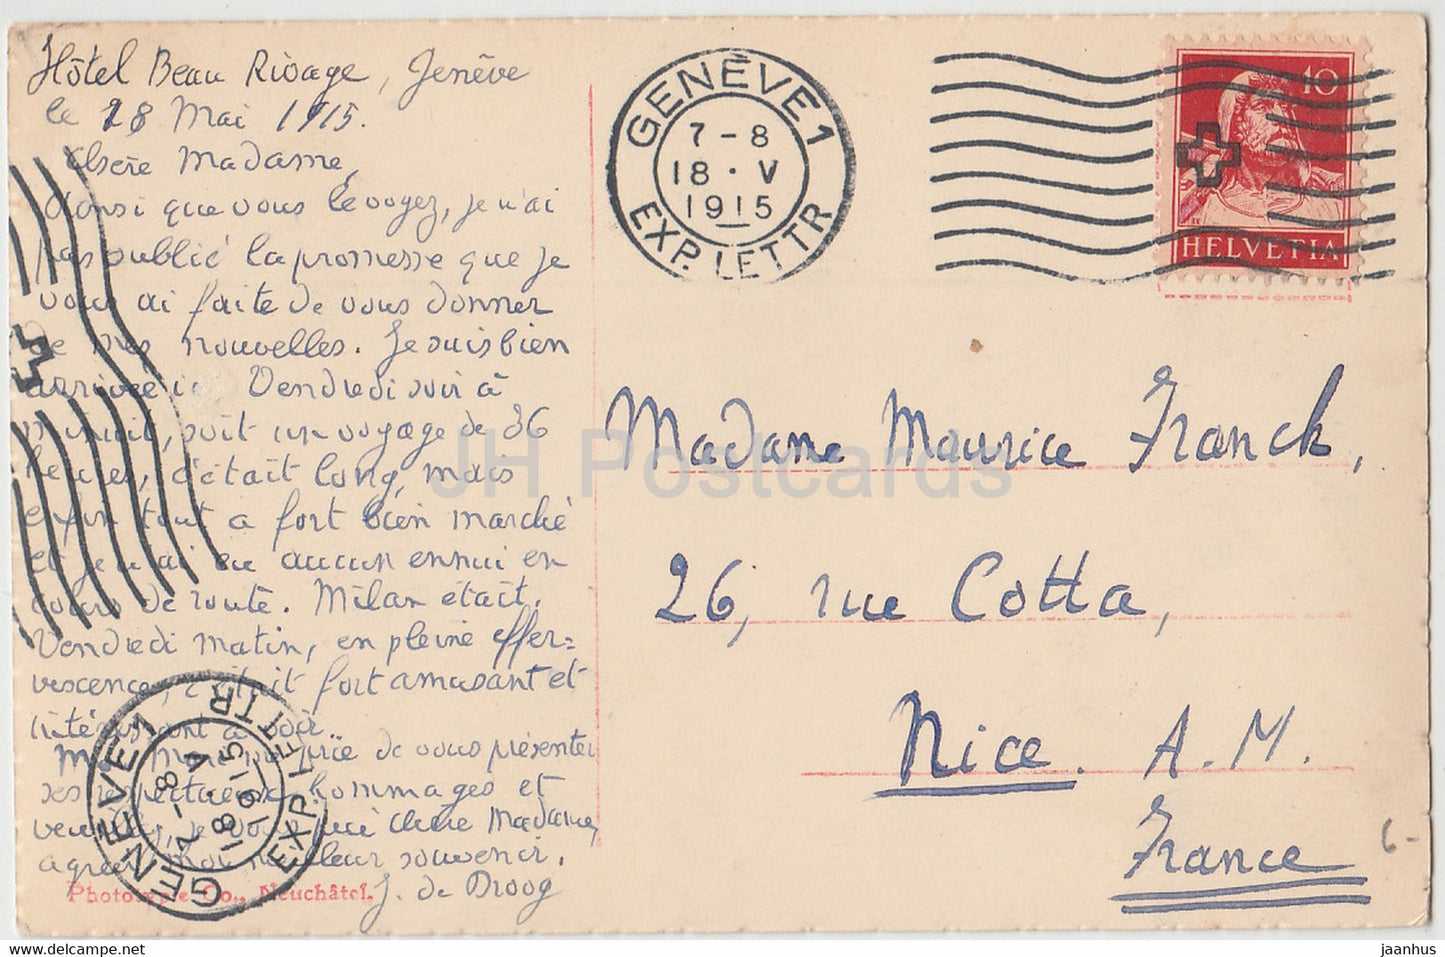 Geneve - Geneva - Ponts et Ile J J Rousseau - 6565 - old postcard - 1915 - Switzerland - used